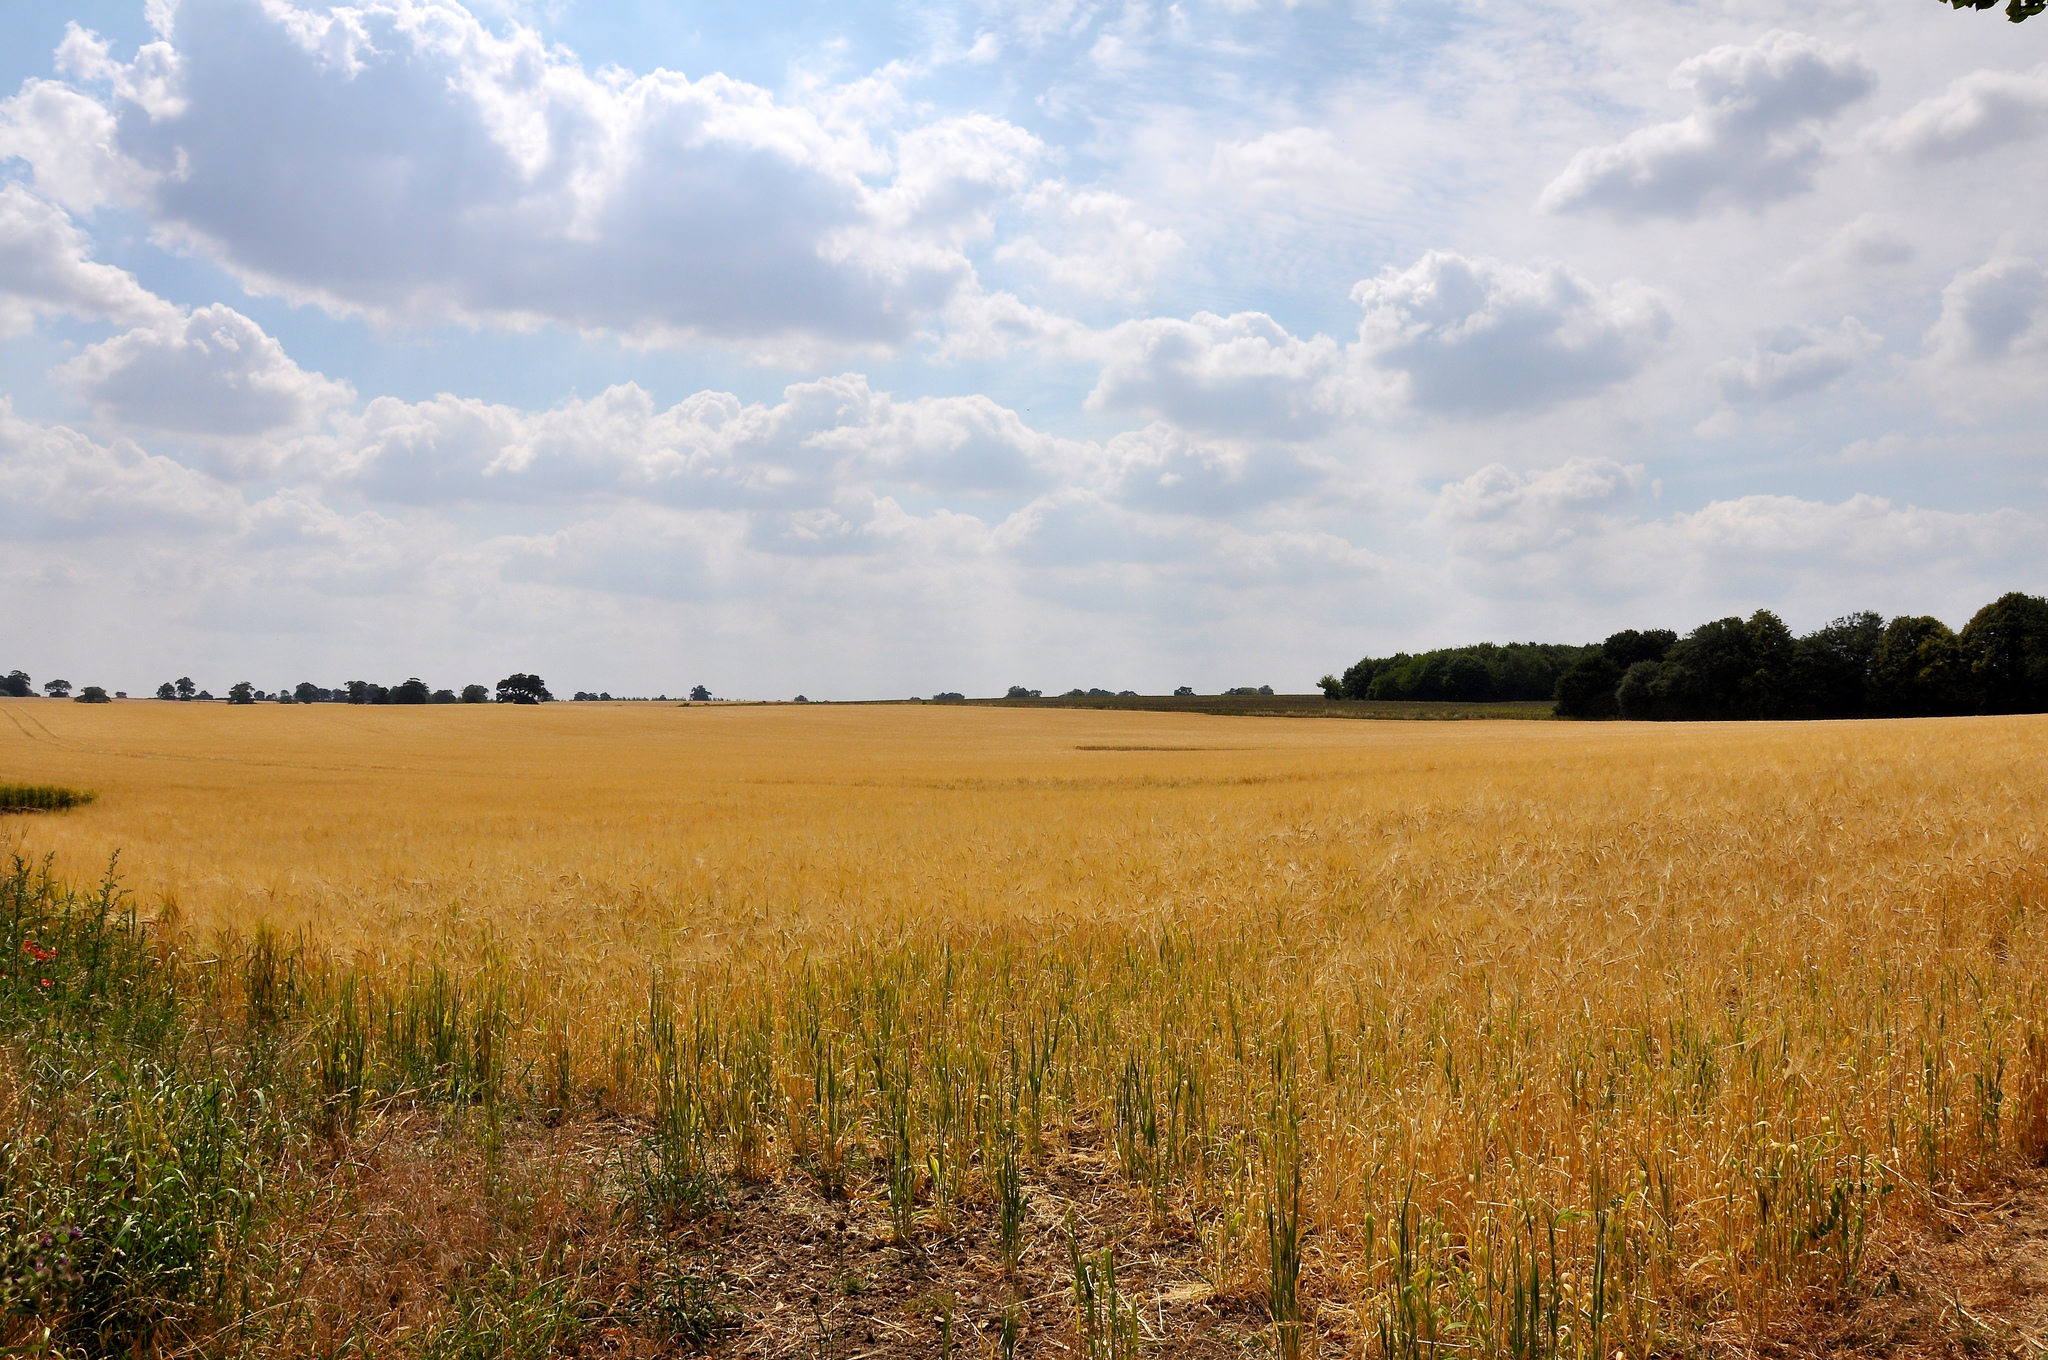 Field of barley in Nowton, UK